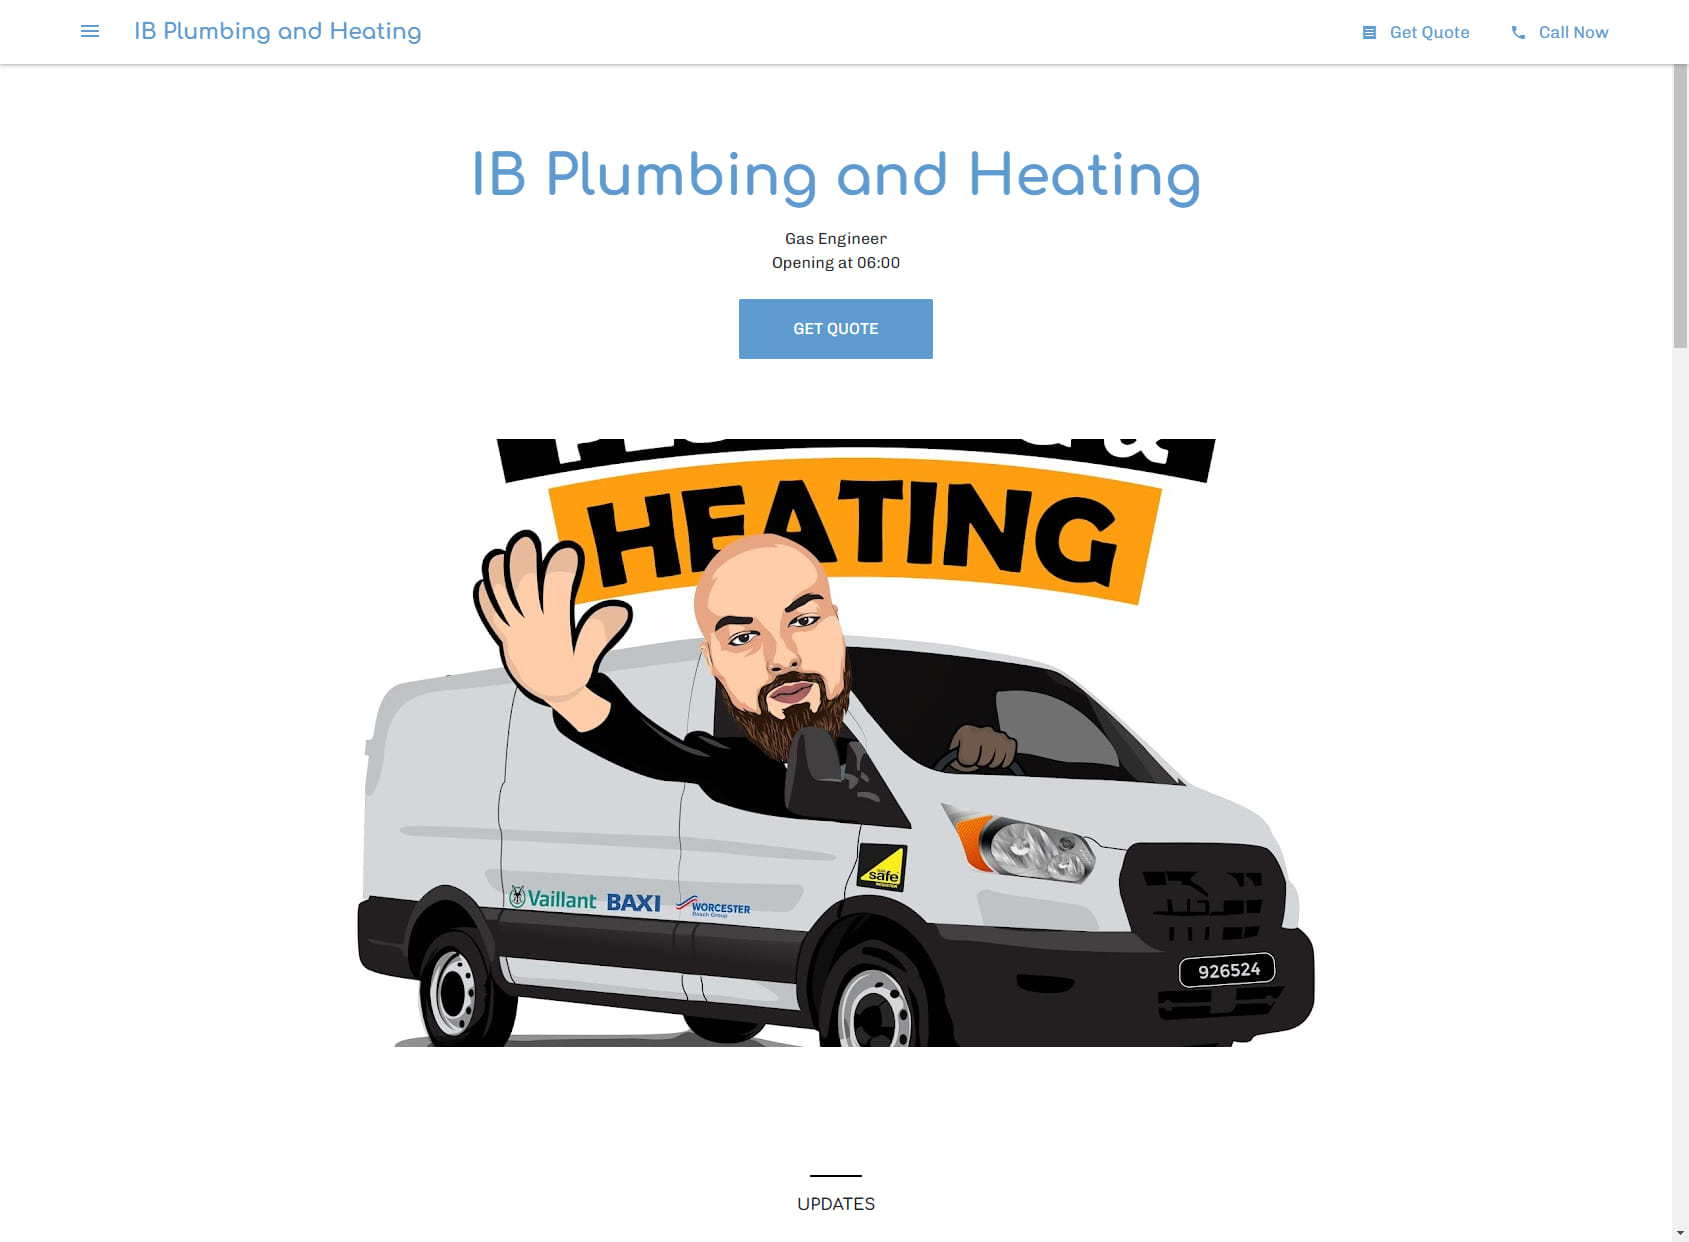 IB Plumbing and Heating